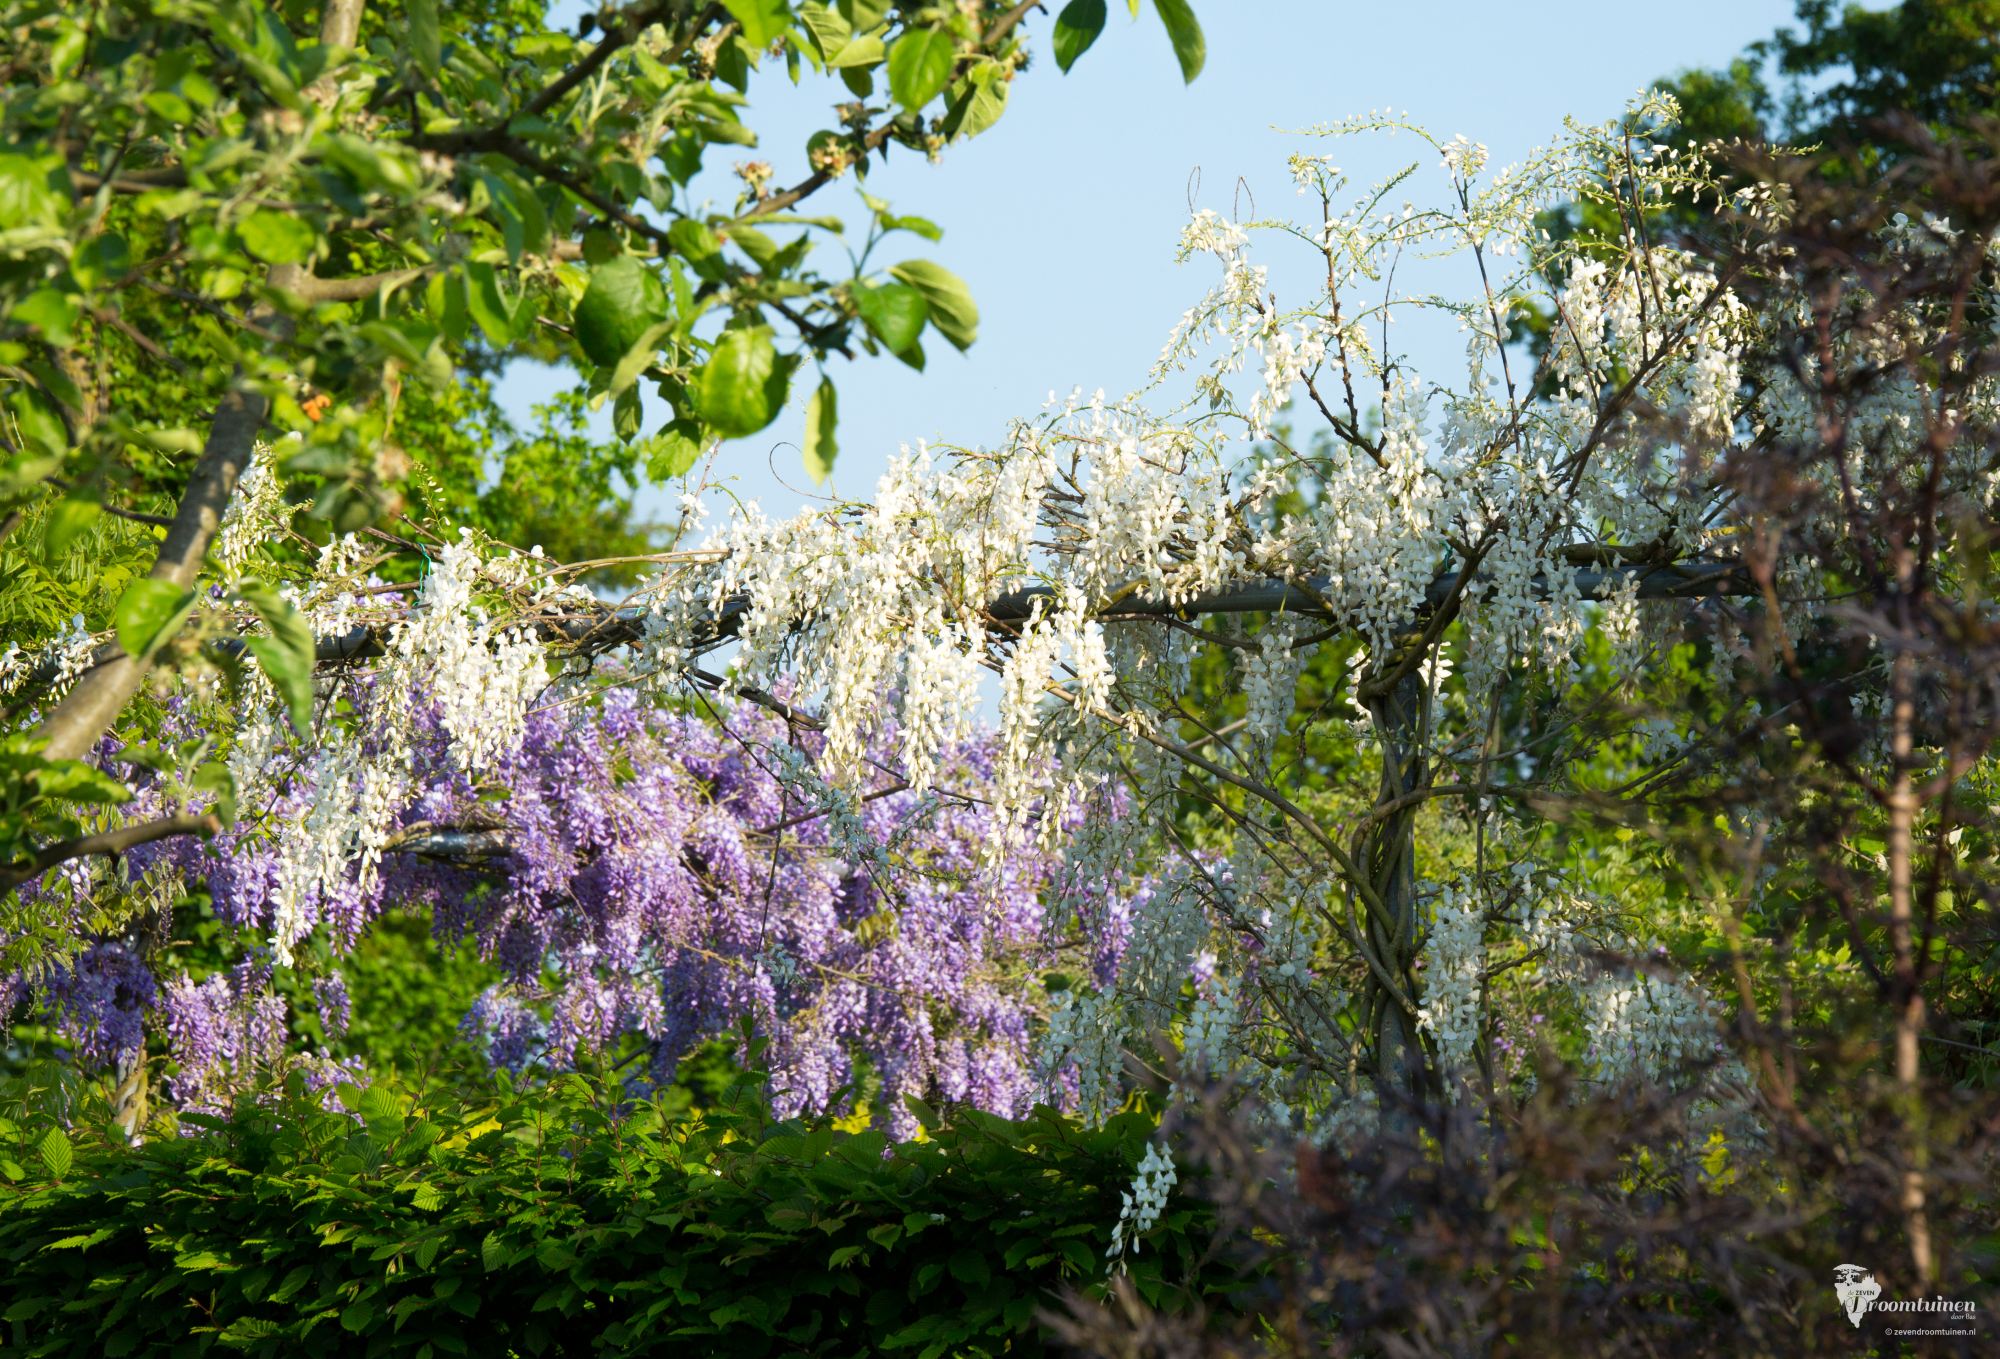 Op de voorgrond de zelfgekweekte witbloemige Blauweregen (Wisteria) in bloei.